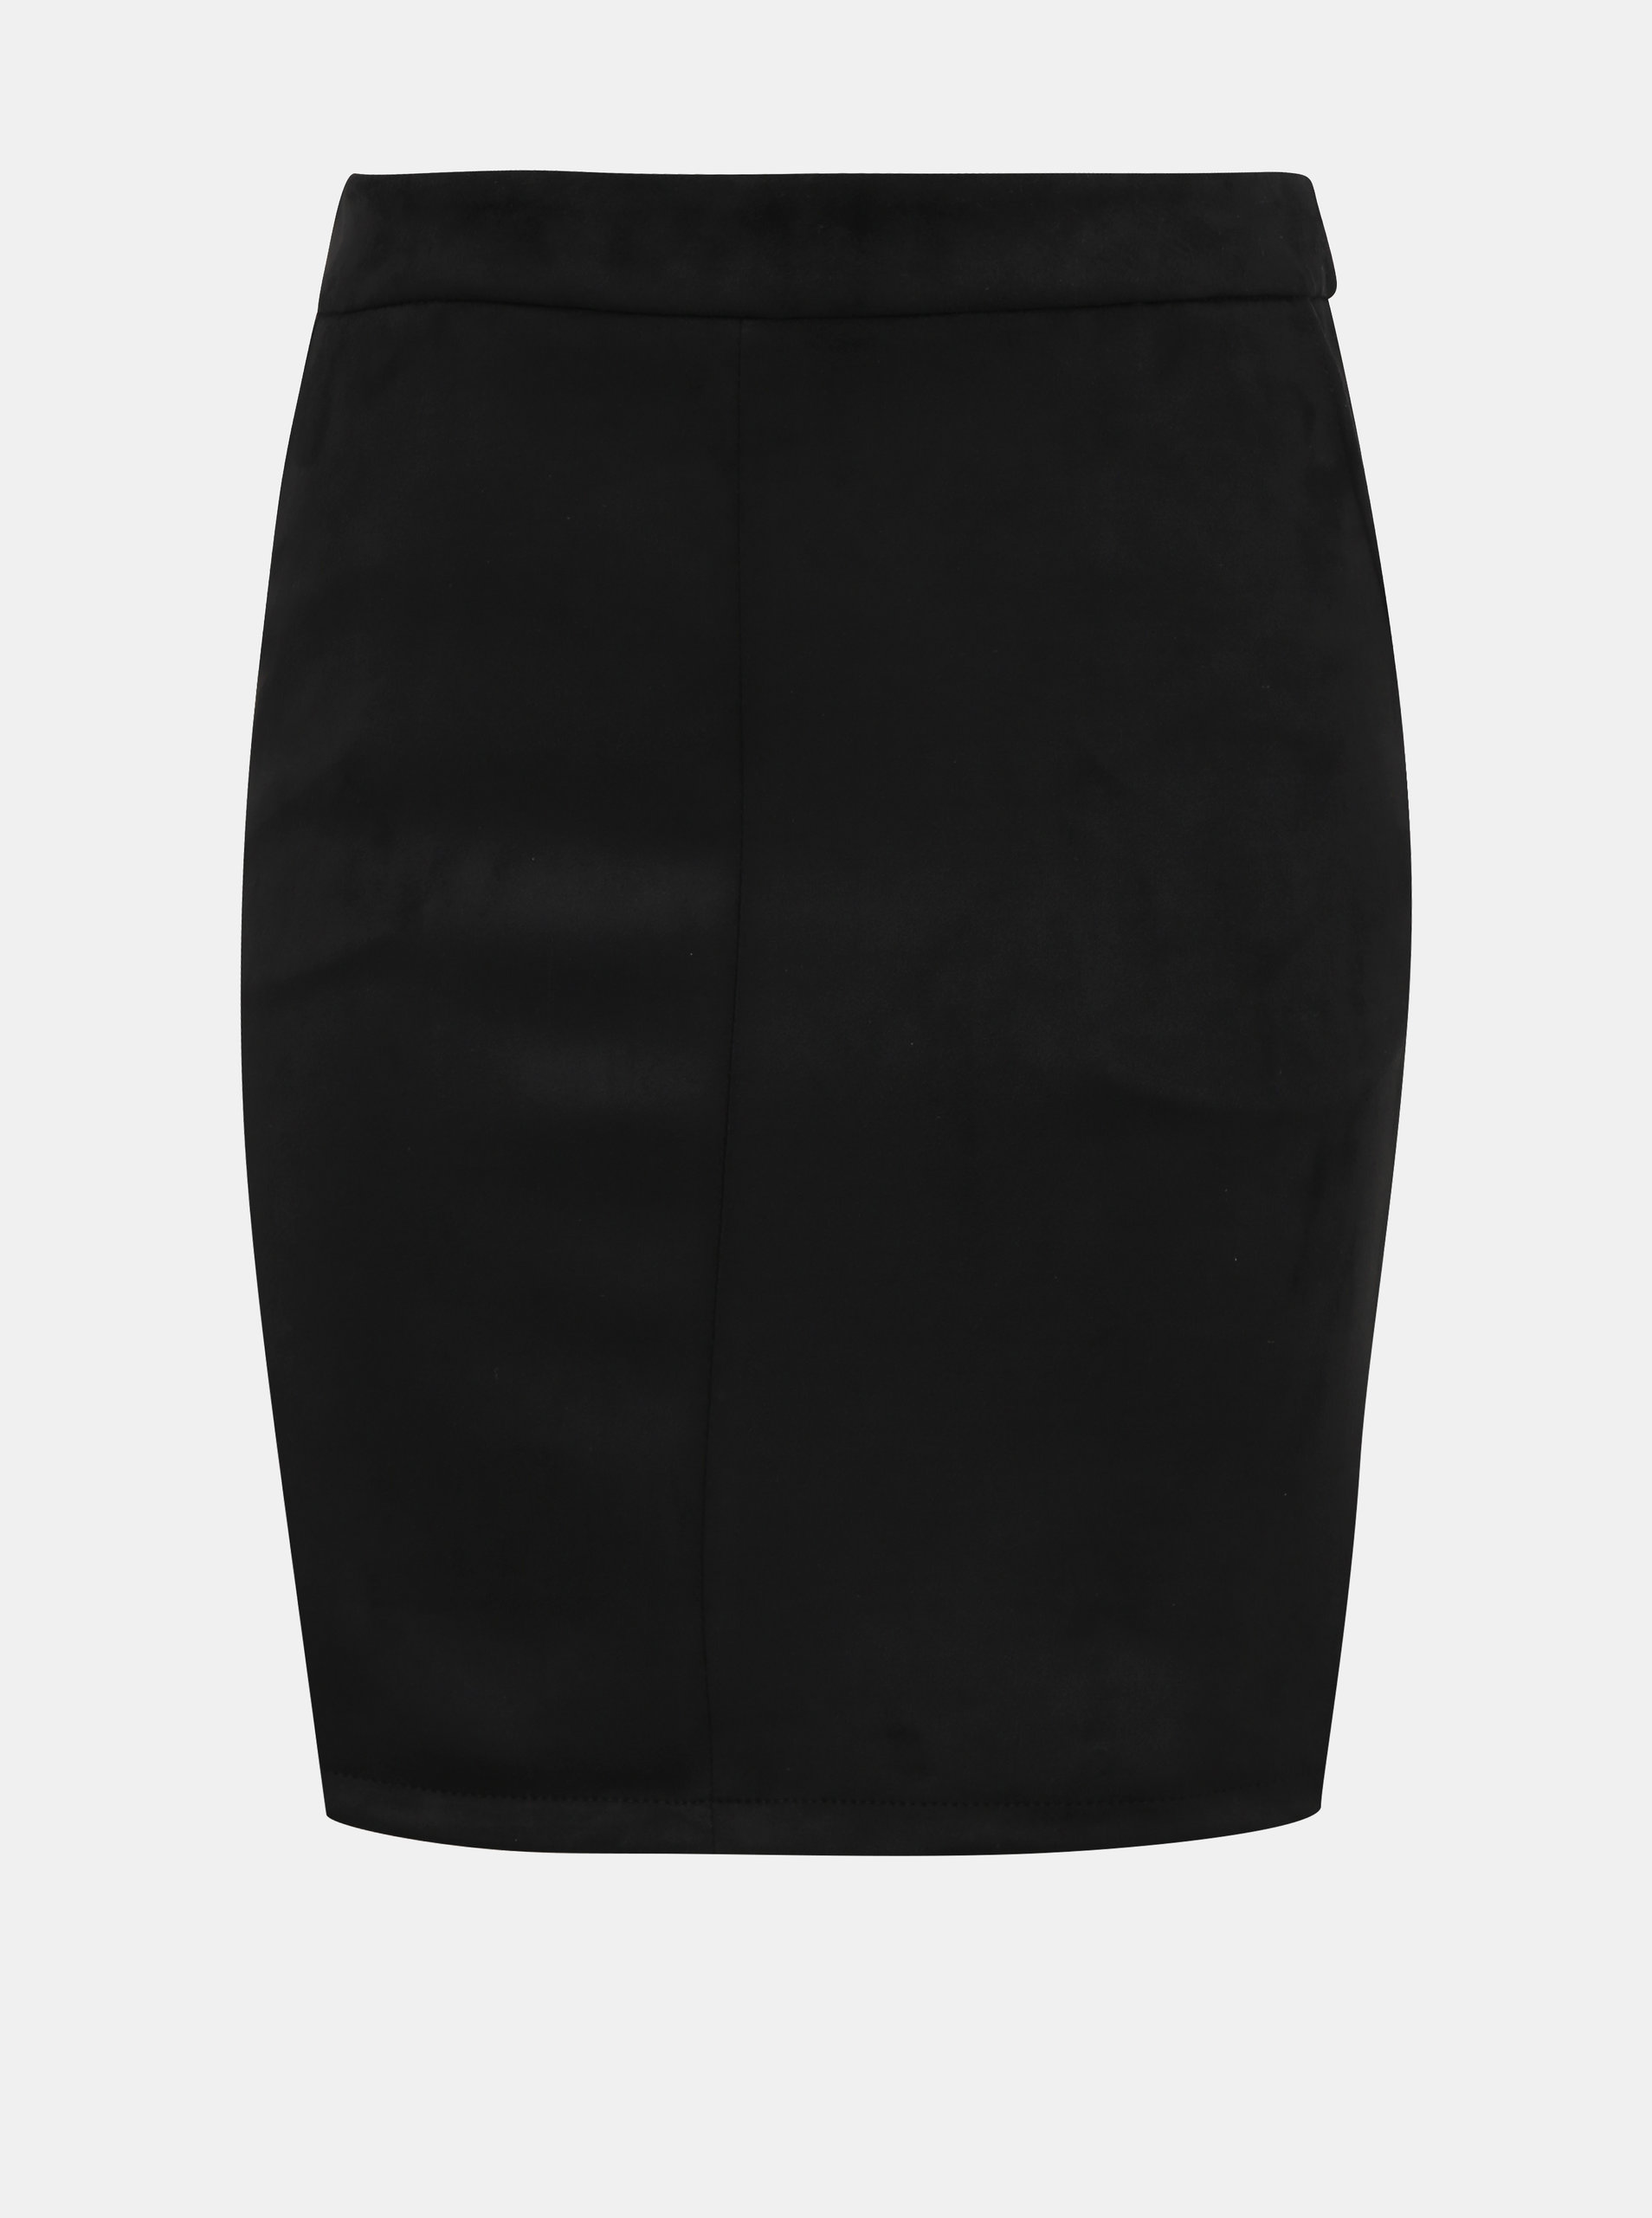 Fotografie Černá pouzdrová sukně v semišové úpravě VILA Faddy